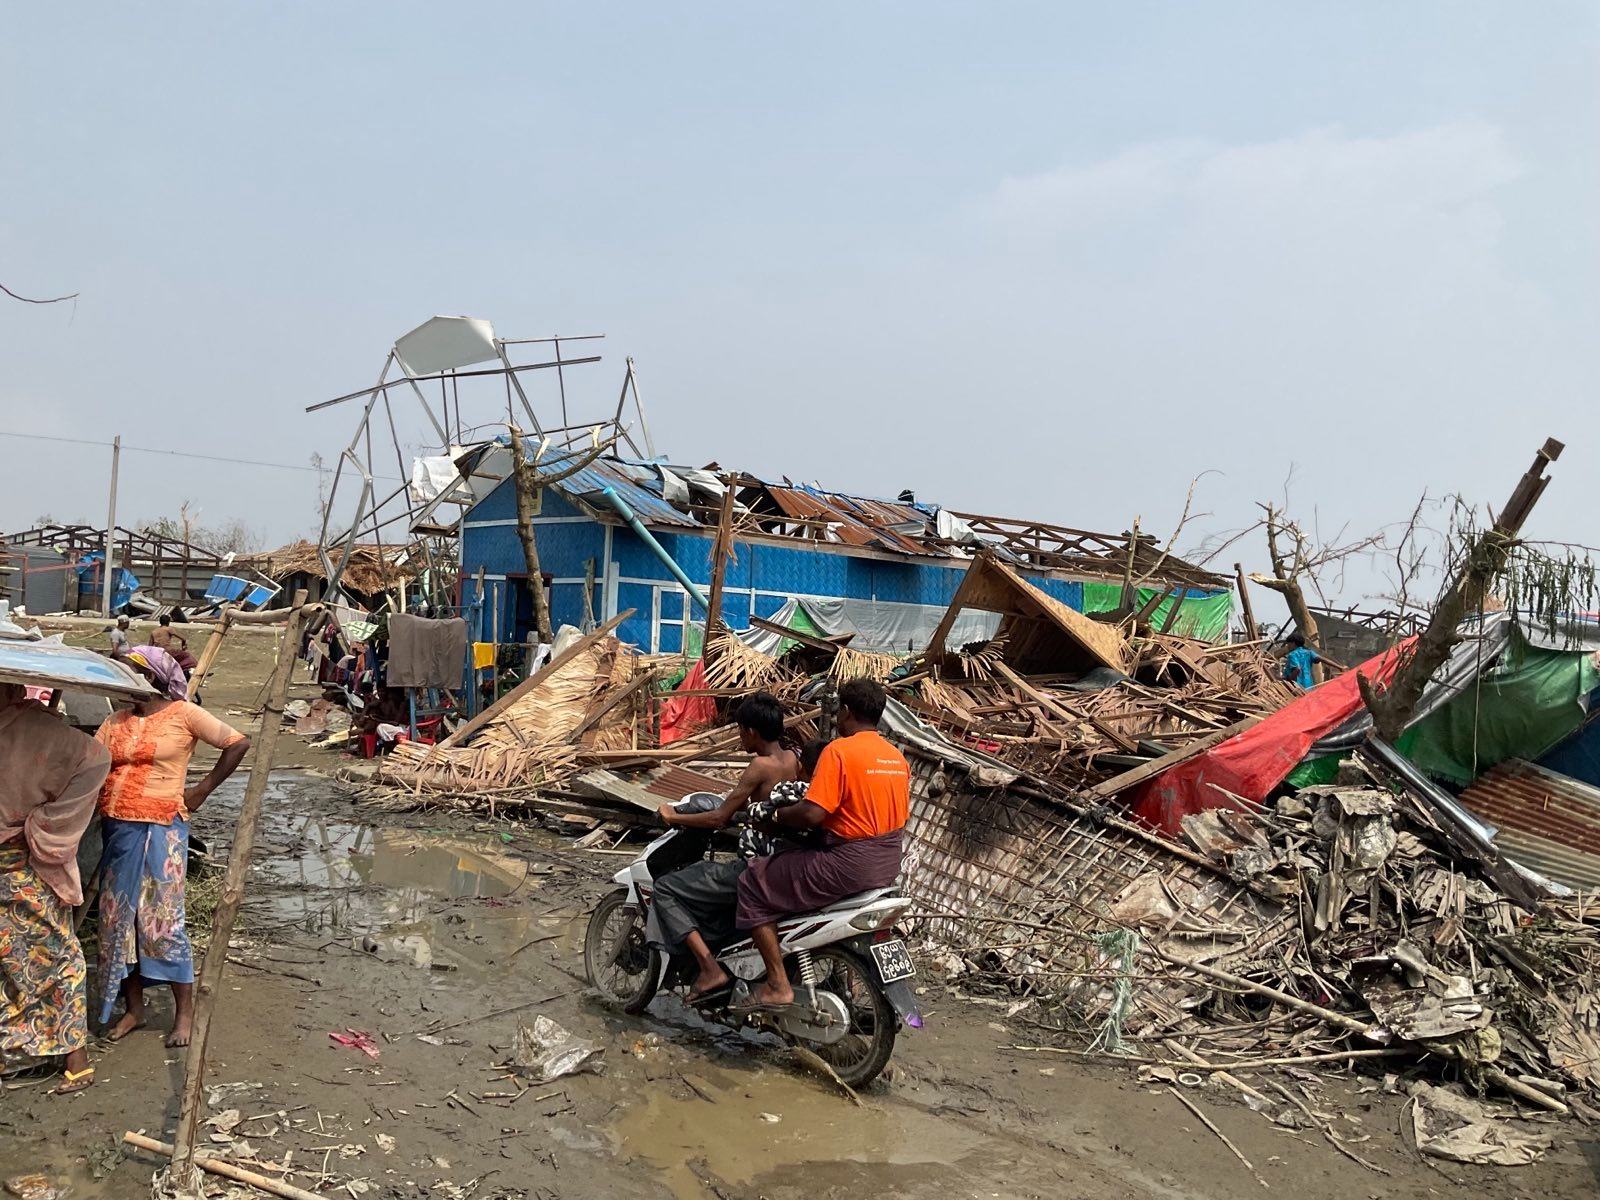  مخيم تاي تشونغ للنازحين الذي دمره الإعصار في سيتوي، بولاية راخين، ميانمار.